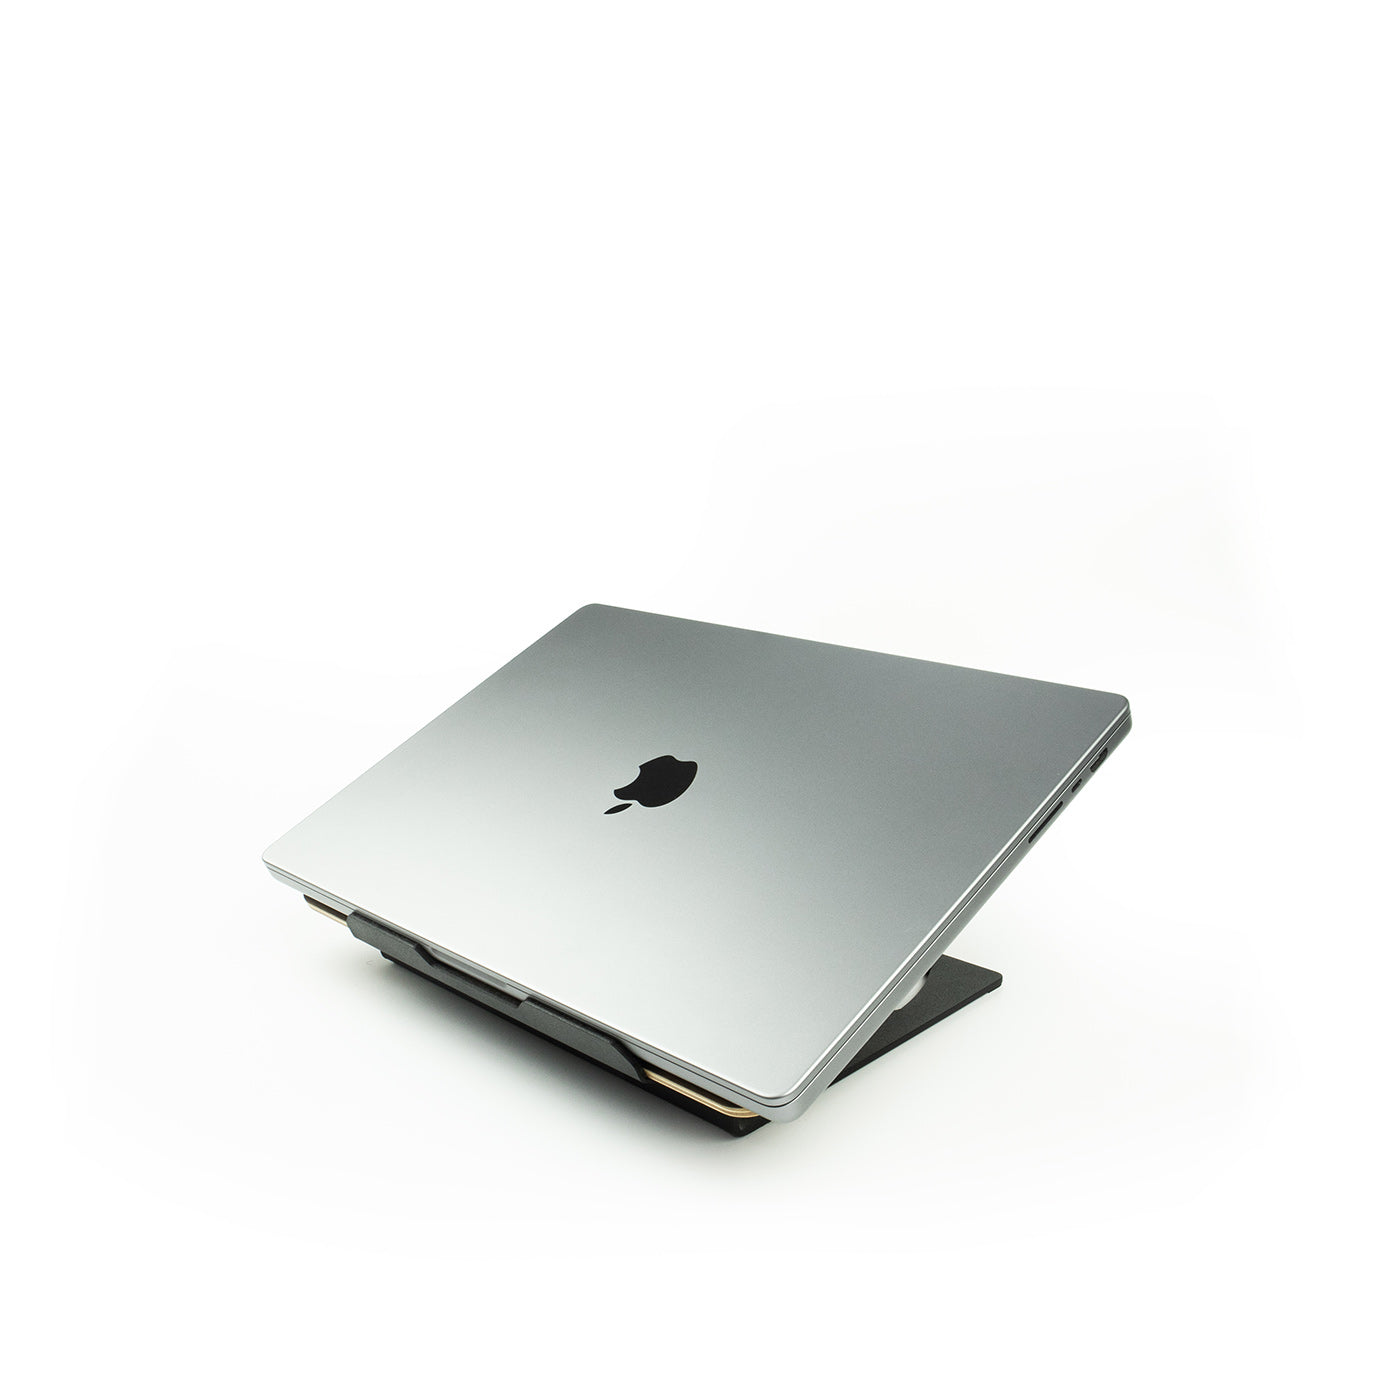 Laptop Riser Oak - Black Steel